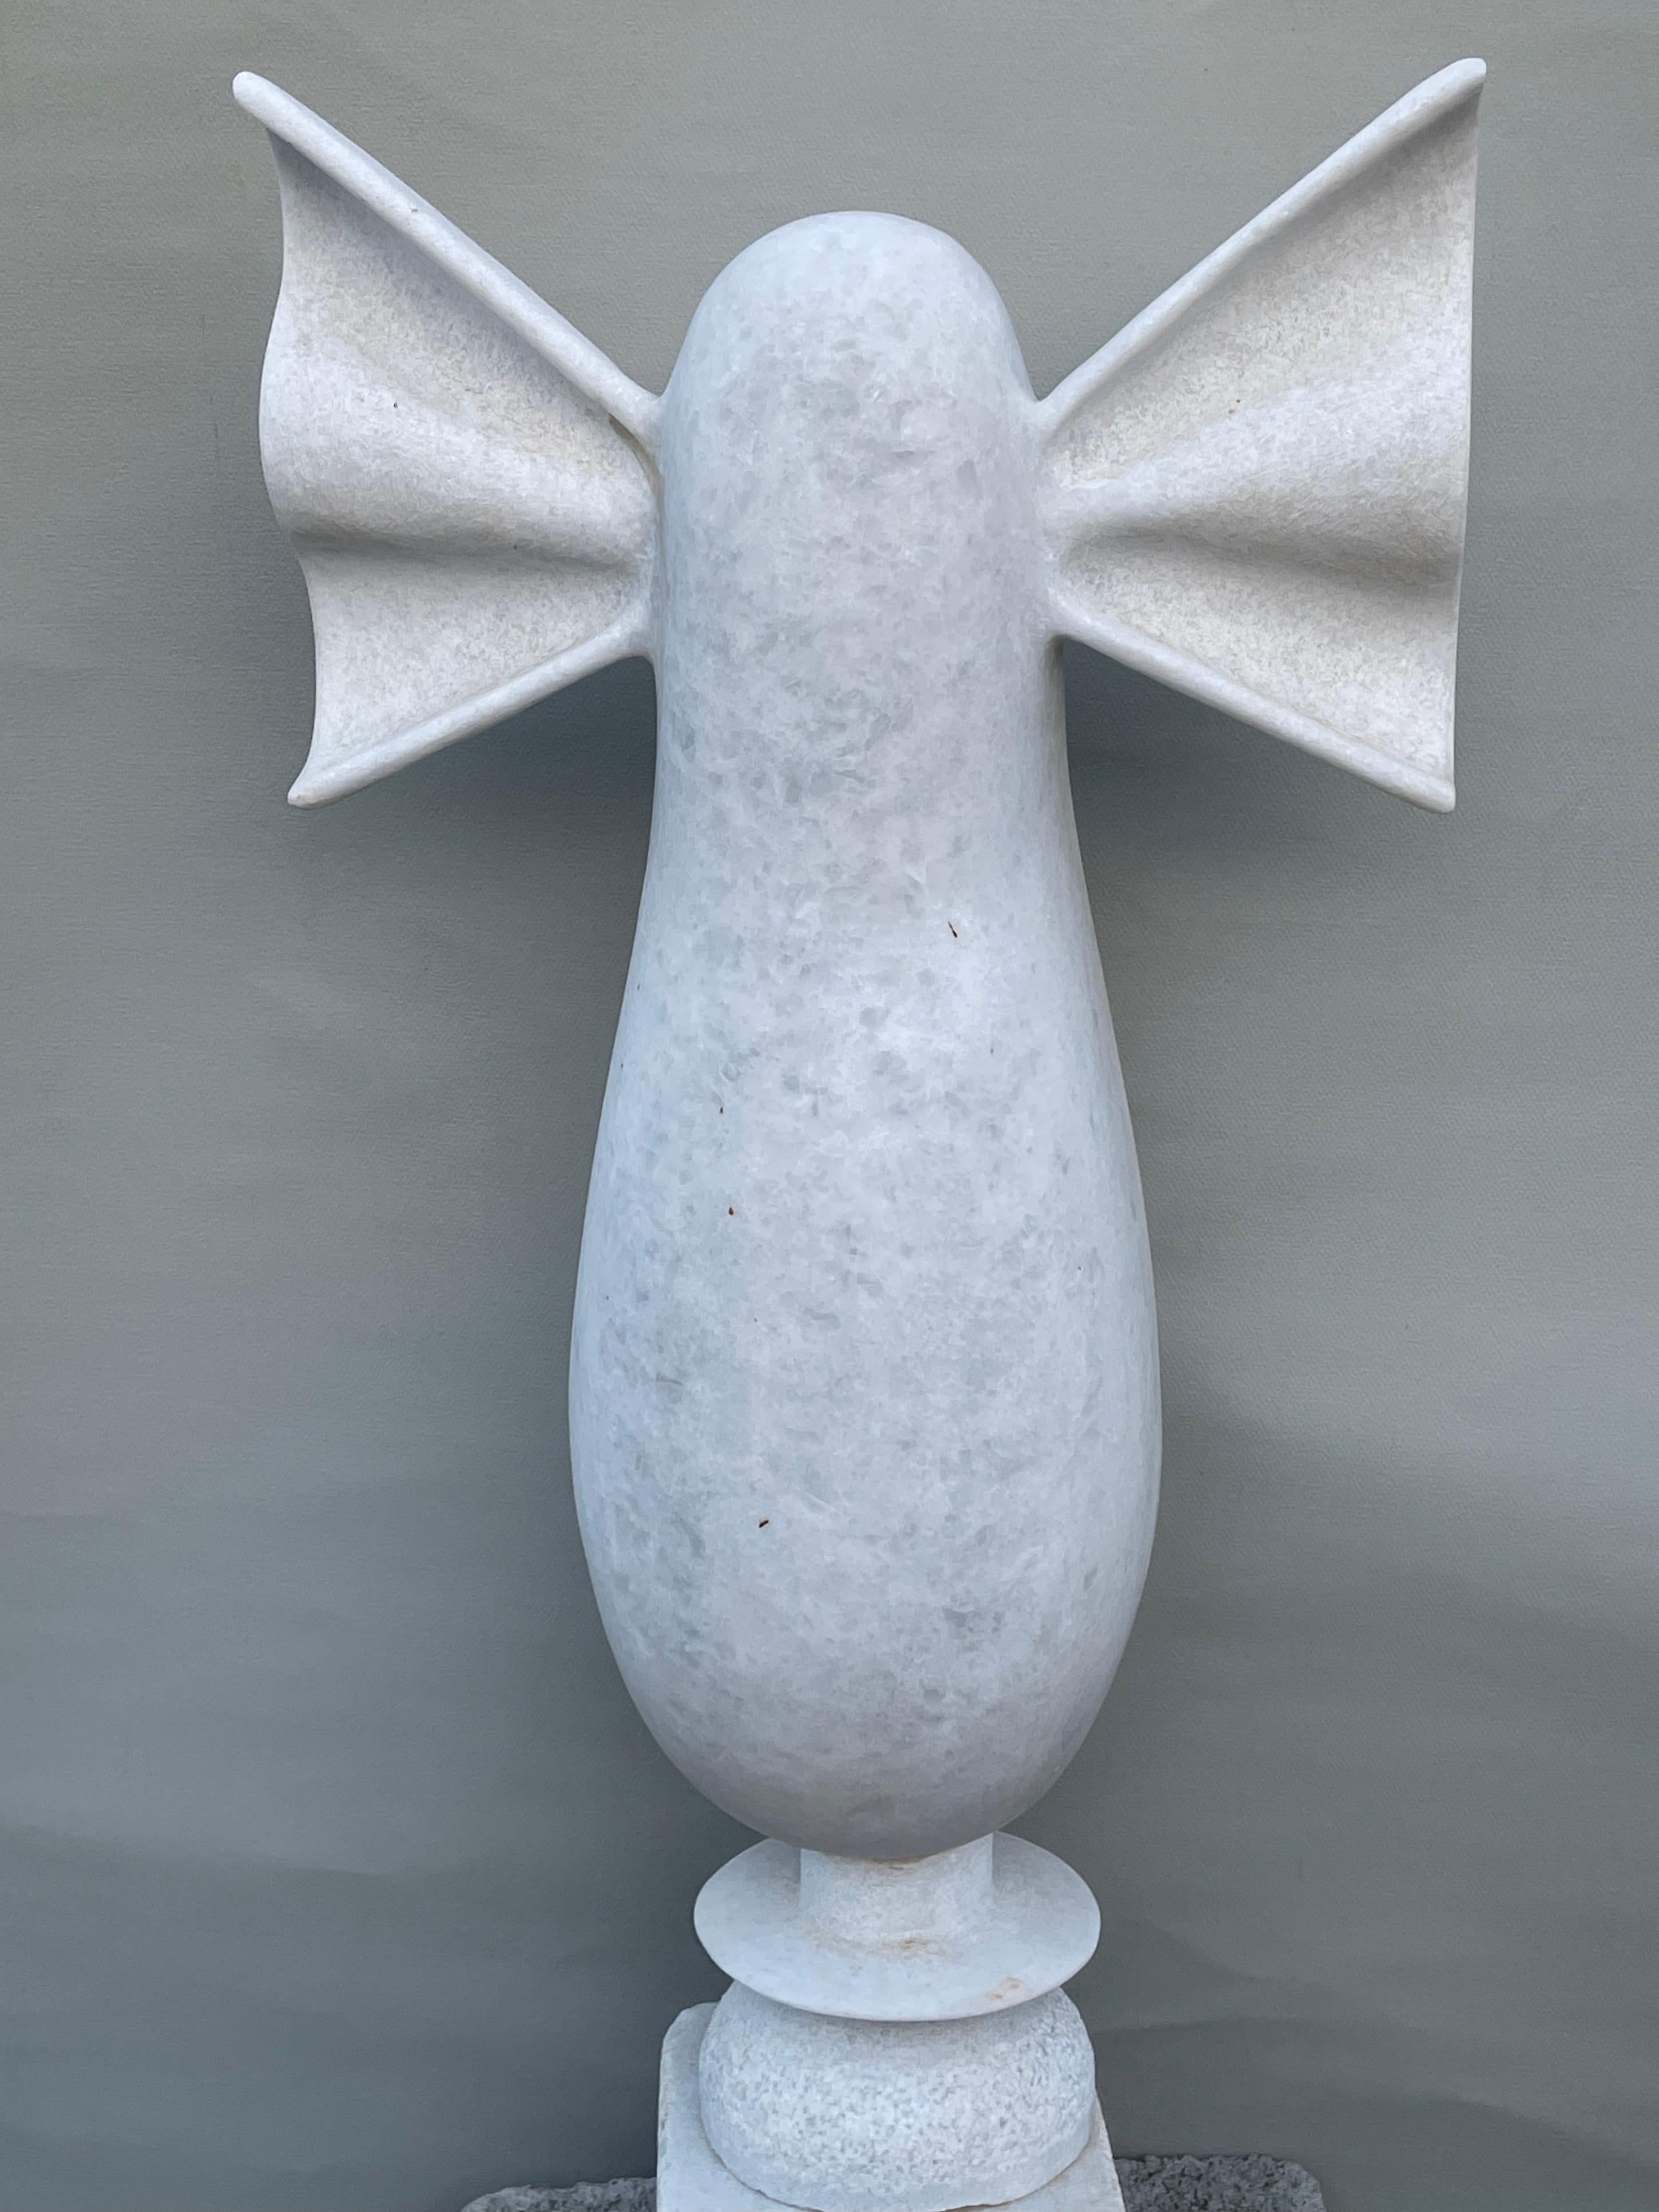 Sculpture en marbre de Nike réalisée à la main par Tom Von Kaenel.
Dimensions : D 20 x L 22 x H 74 cm.
Matériaux : marbre.

Tom von Kaenel, sculpteur et peintre, est né en Suisse en 1961. Dès sa plus tendre enfance, il s'est profondément consacré à